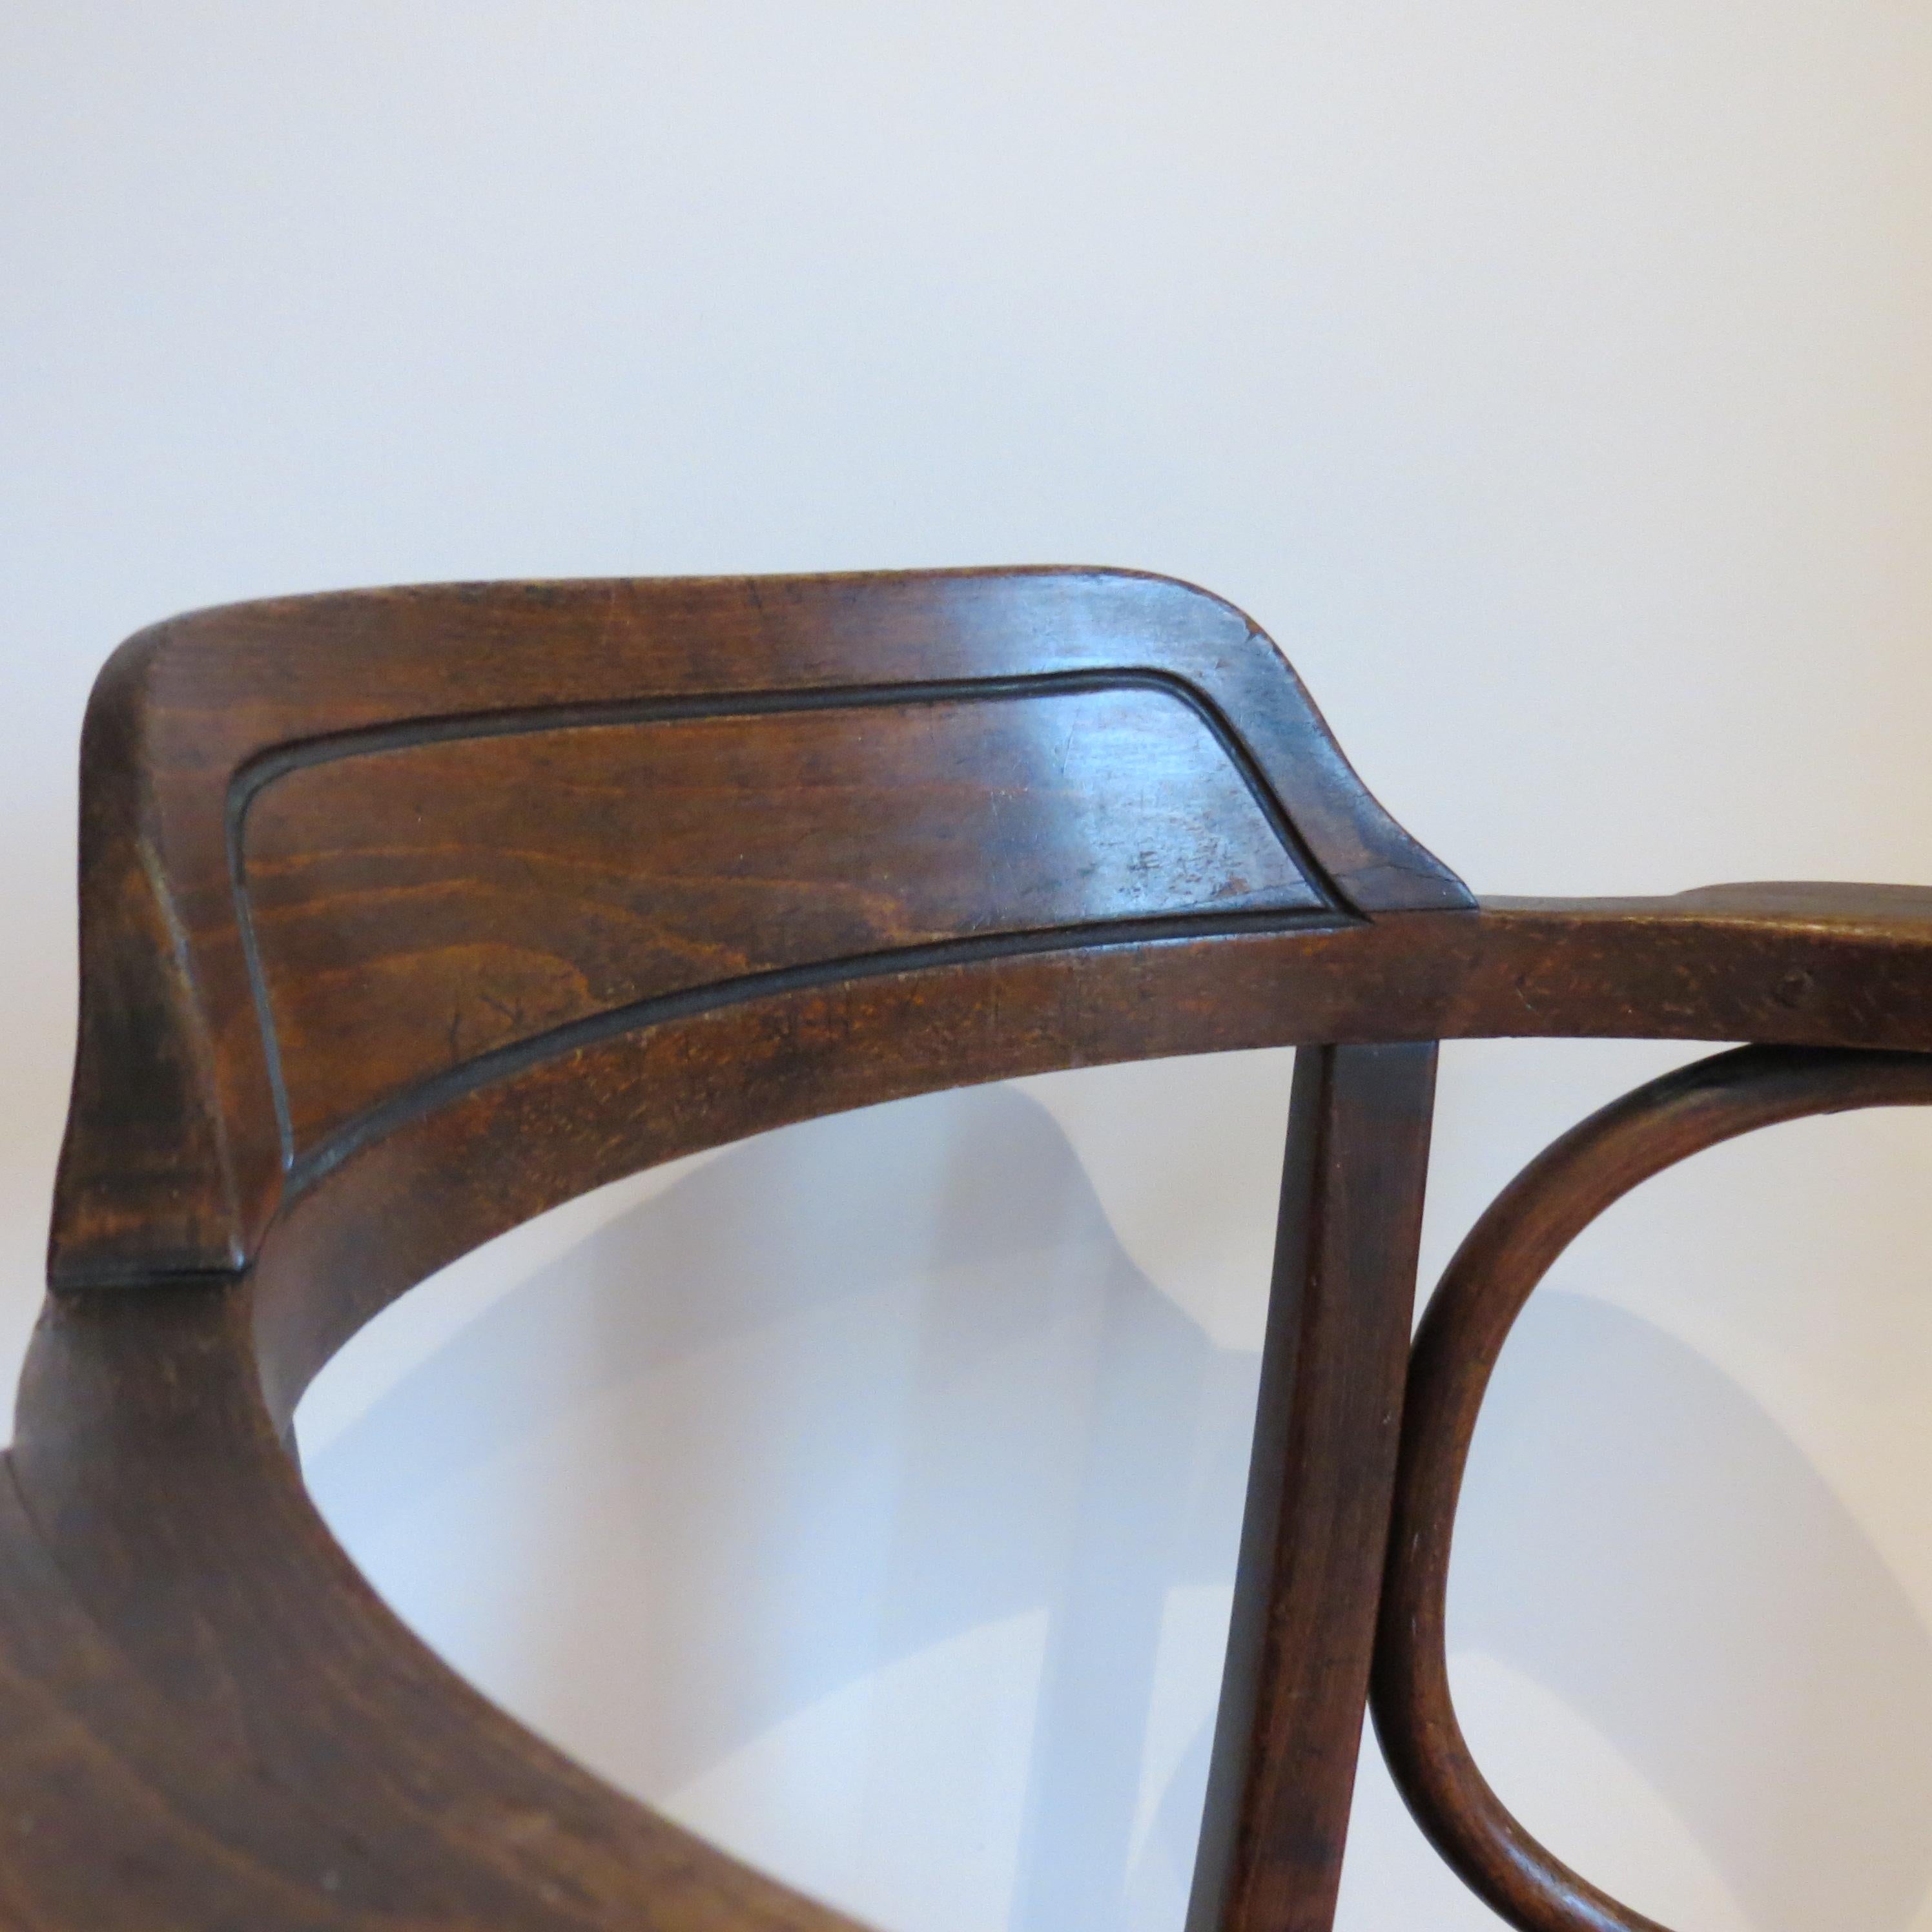 Merveilleuse chaise en bois courbé, conçue par Jacob et Joseph Kohn, Autriche, et produite par Thonet, datant du début des années 1900.  Numéro de modèle 704
Conserve le siège gaufré d'origine avec un magnifique motif de coquille.  
Dossier et